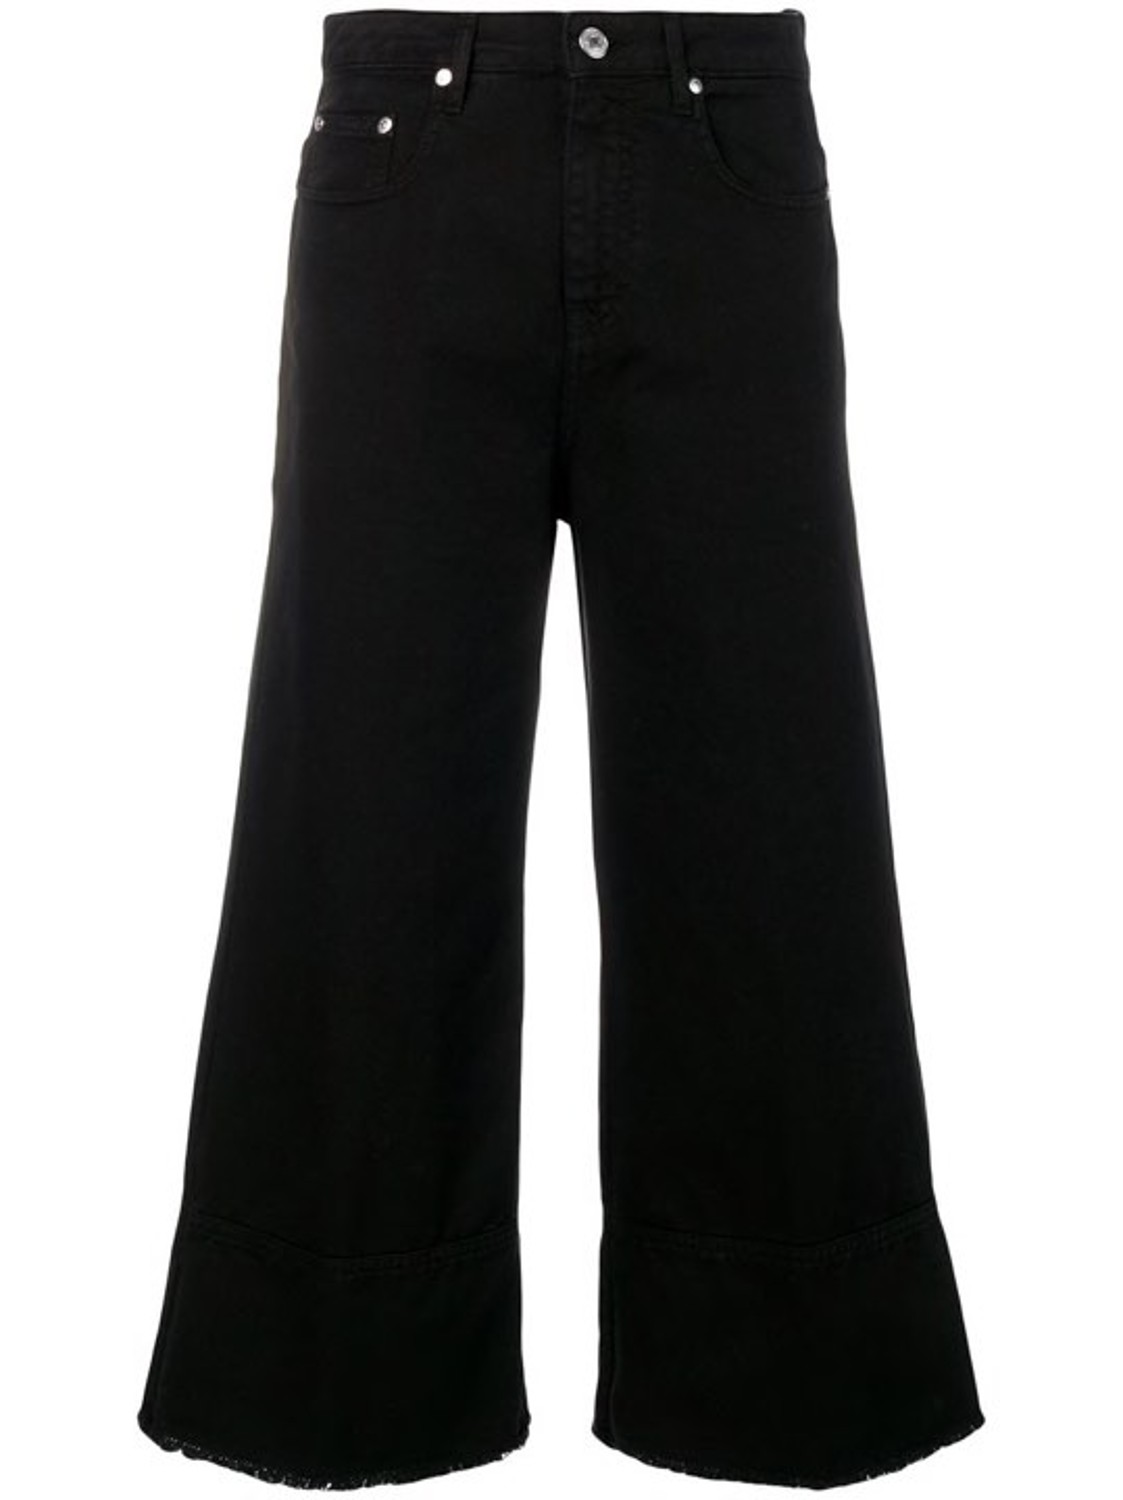 shop MSGM Sales Pantaloni: Pantalone MSGM, modello jeans, cropped, in colore nero, 4 tasche, sfrangiato infondo, vita alta.

Composizione: 100% cotone. number 1472